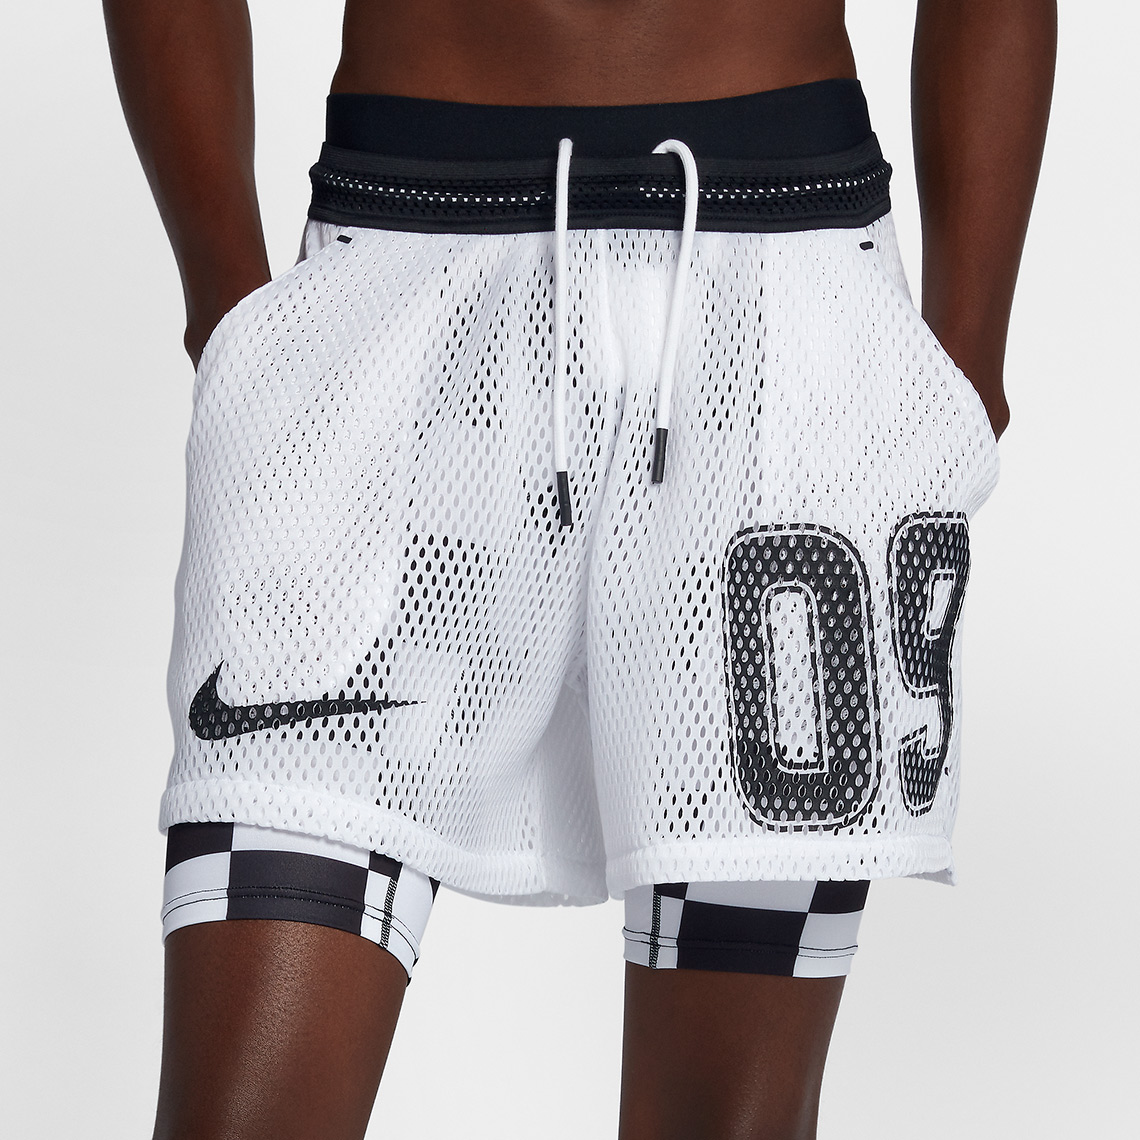 Off White Nike Soccer Shorts White Aq3612 100 4